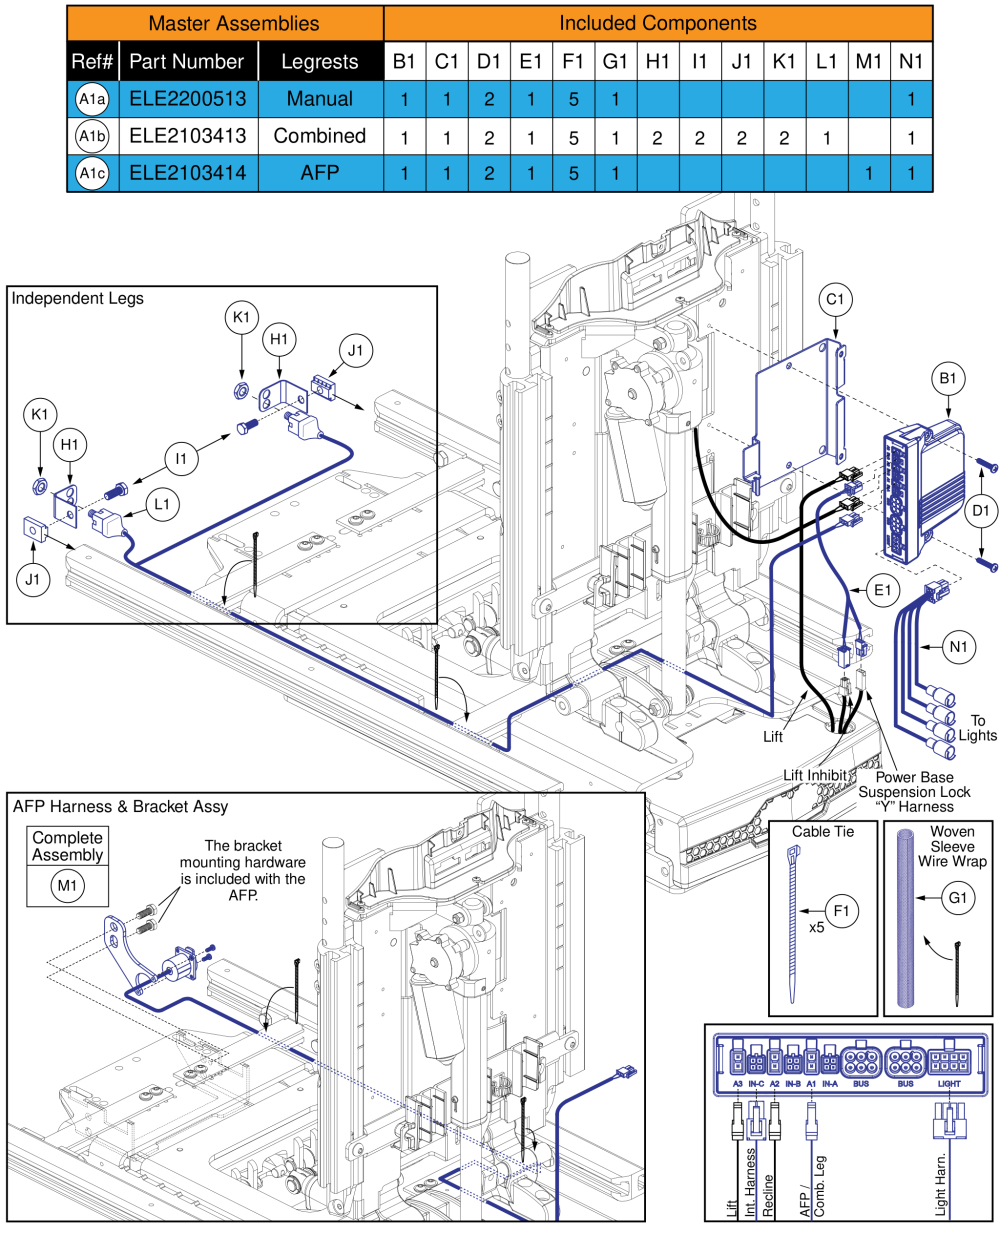 Ql3 Am3l, Tb3 Lift & Recline W/ Ilevel (q6 Edge Series, R-trak, Stretto Full Seat Lights) parts diagram